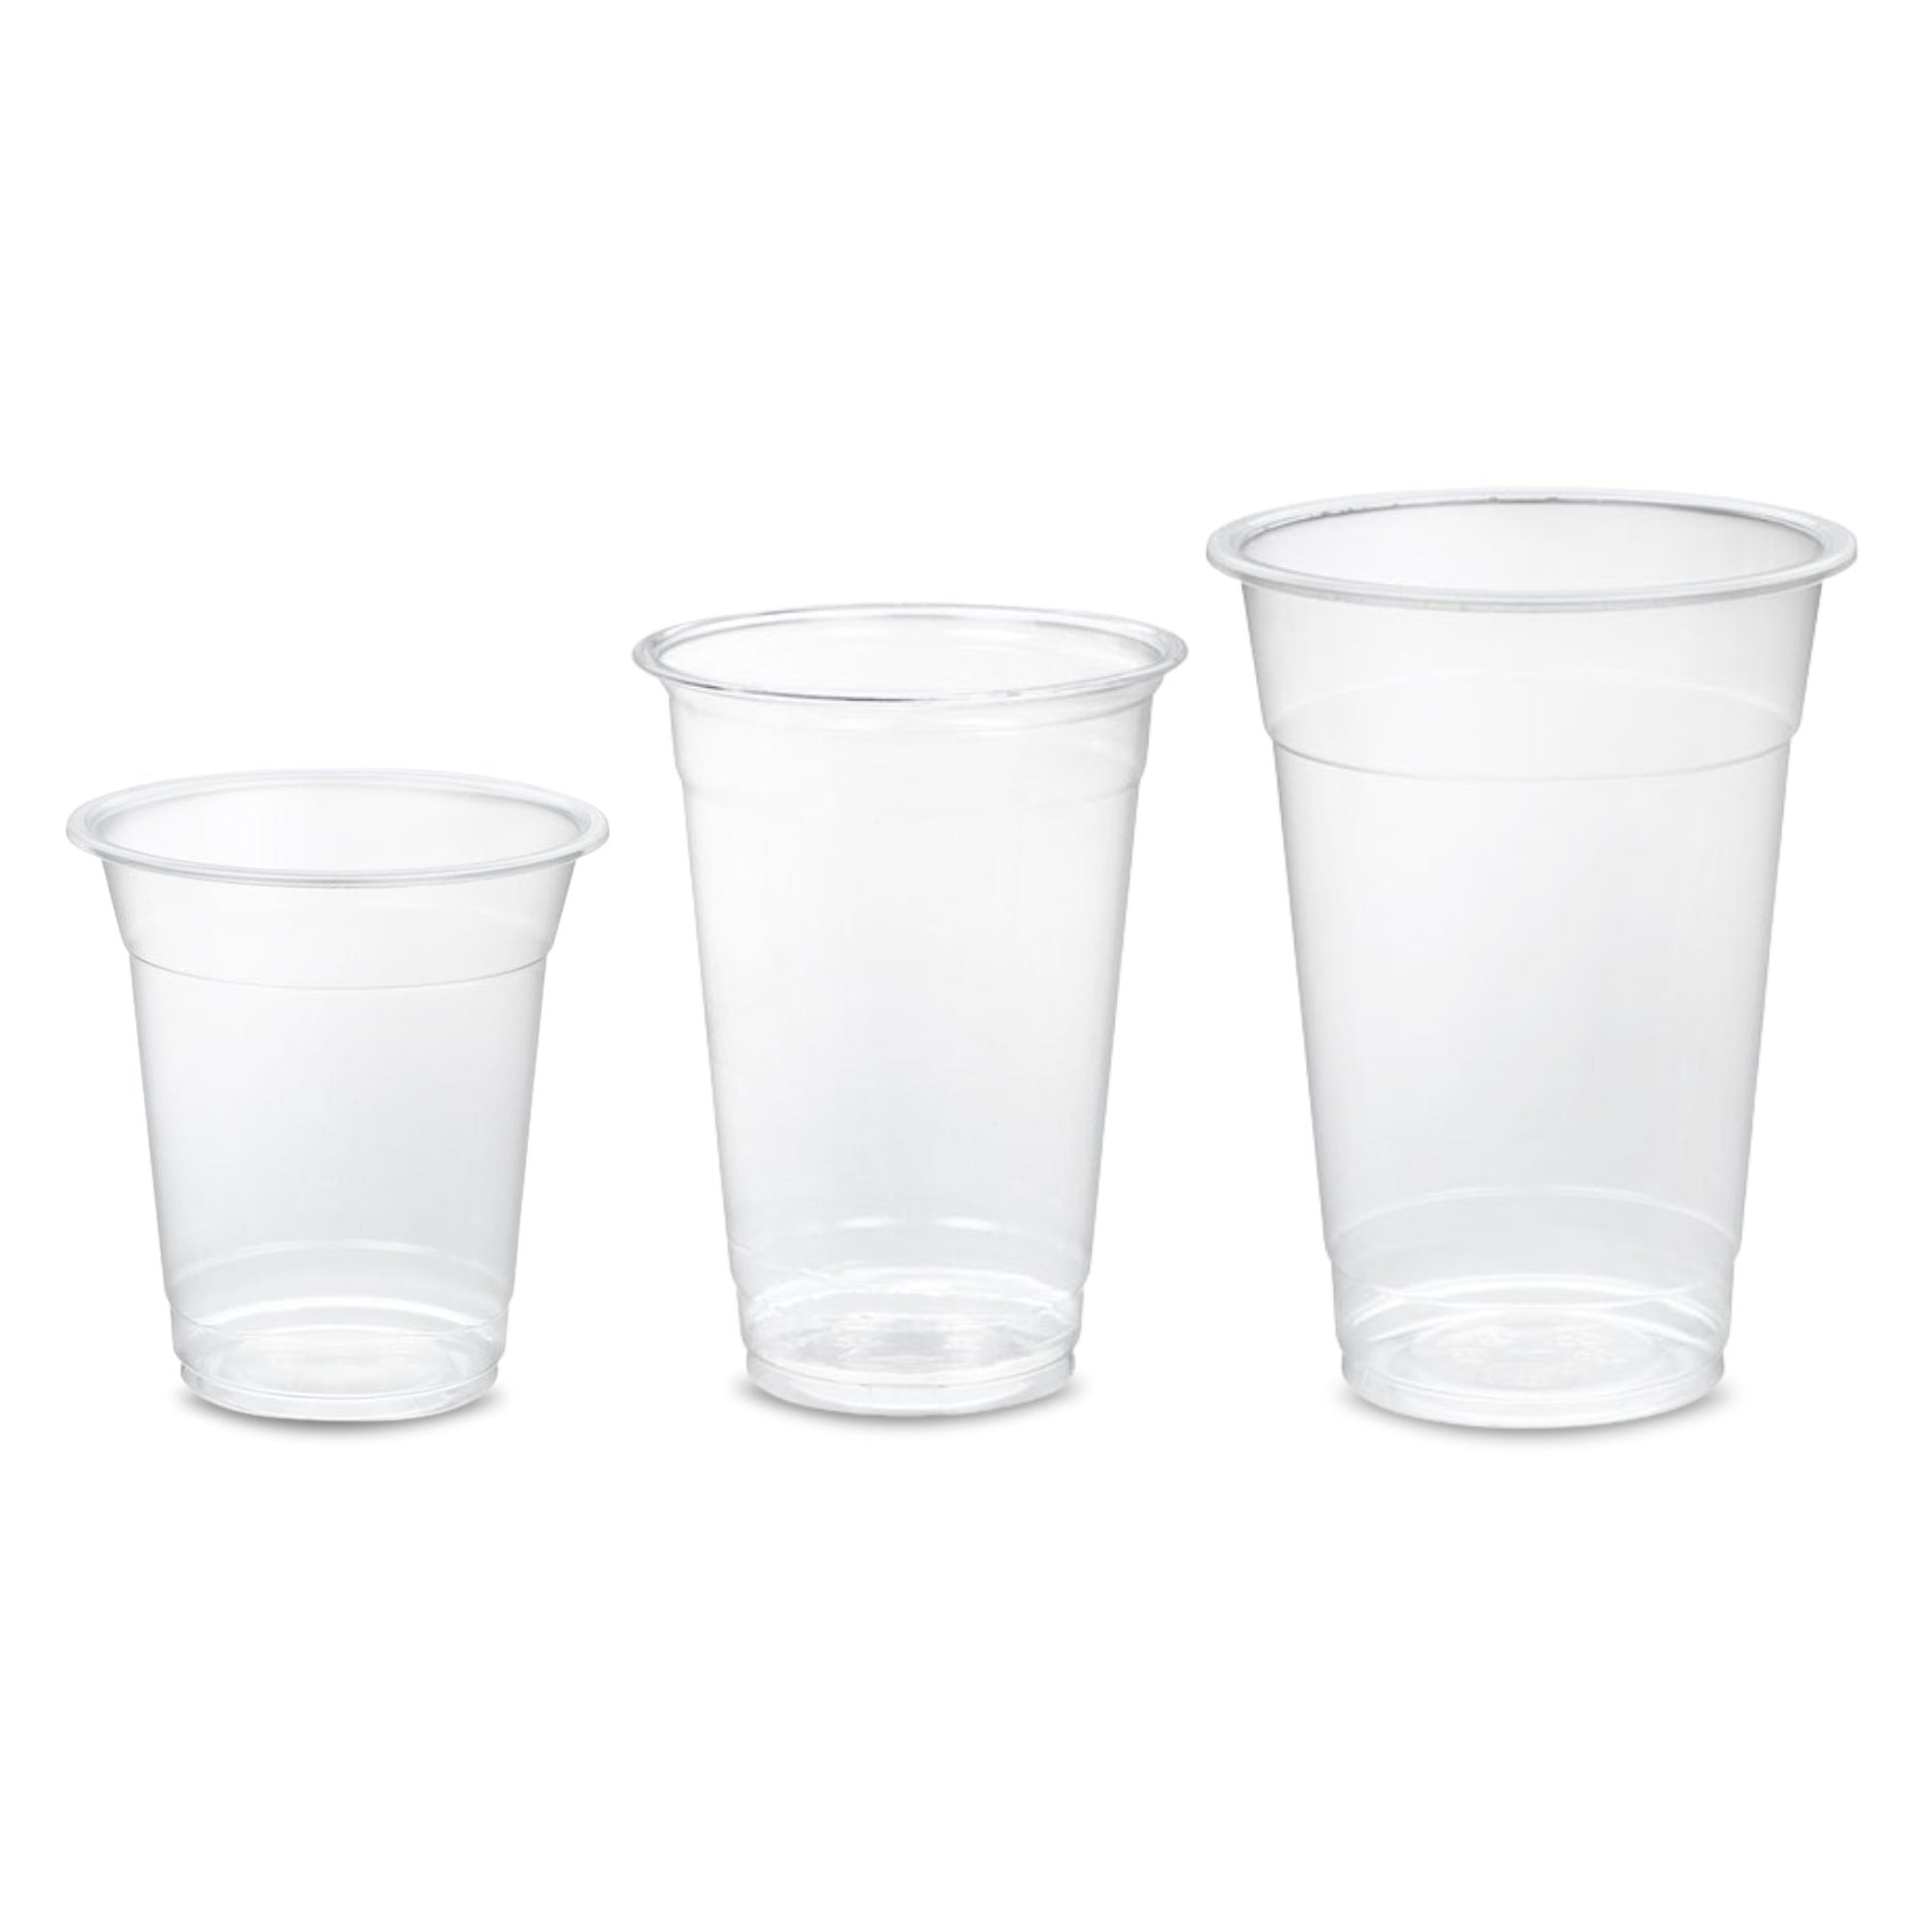 Kreme City Disposable PP Plastic Plain Cups 95mm 50pcs - Kreme City Supplies